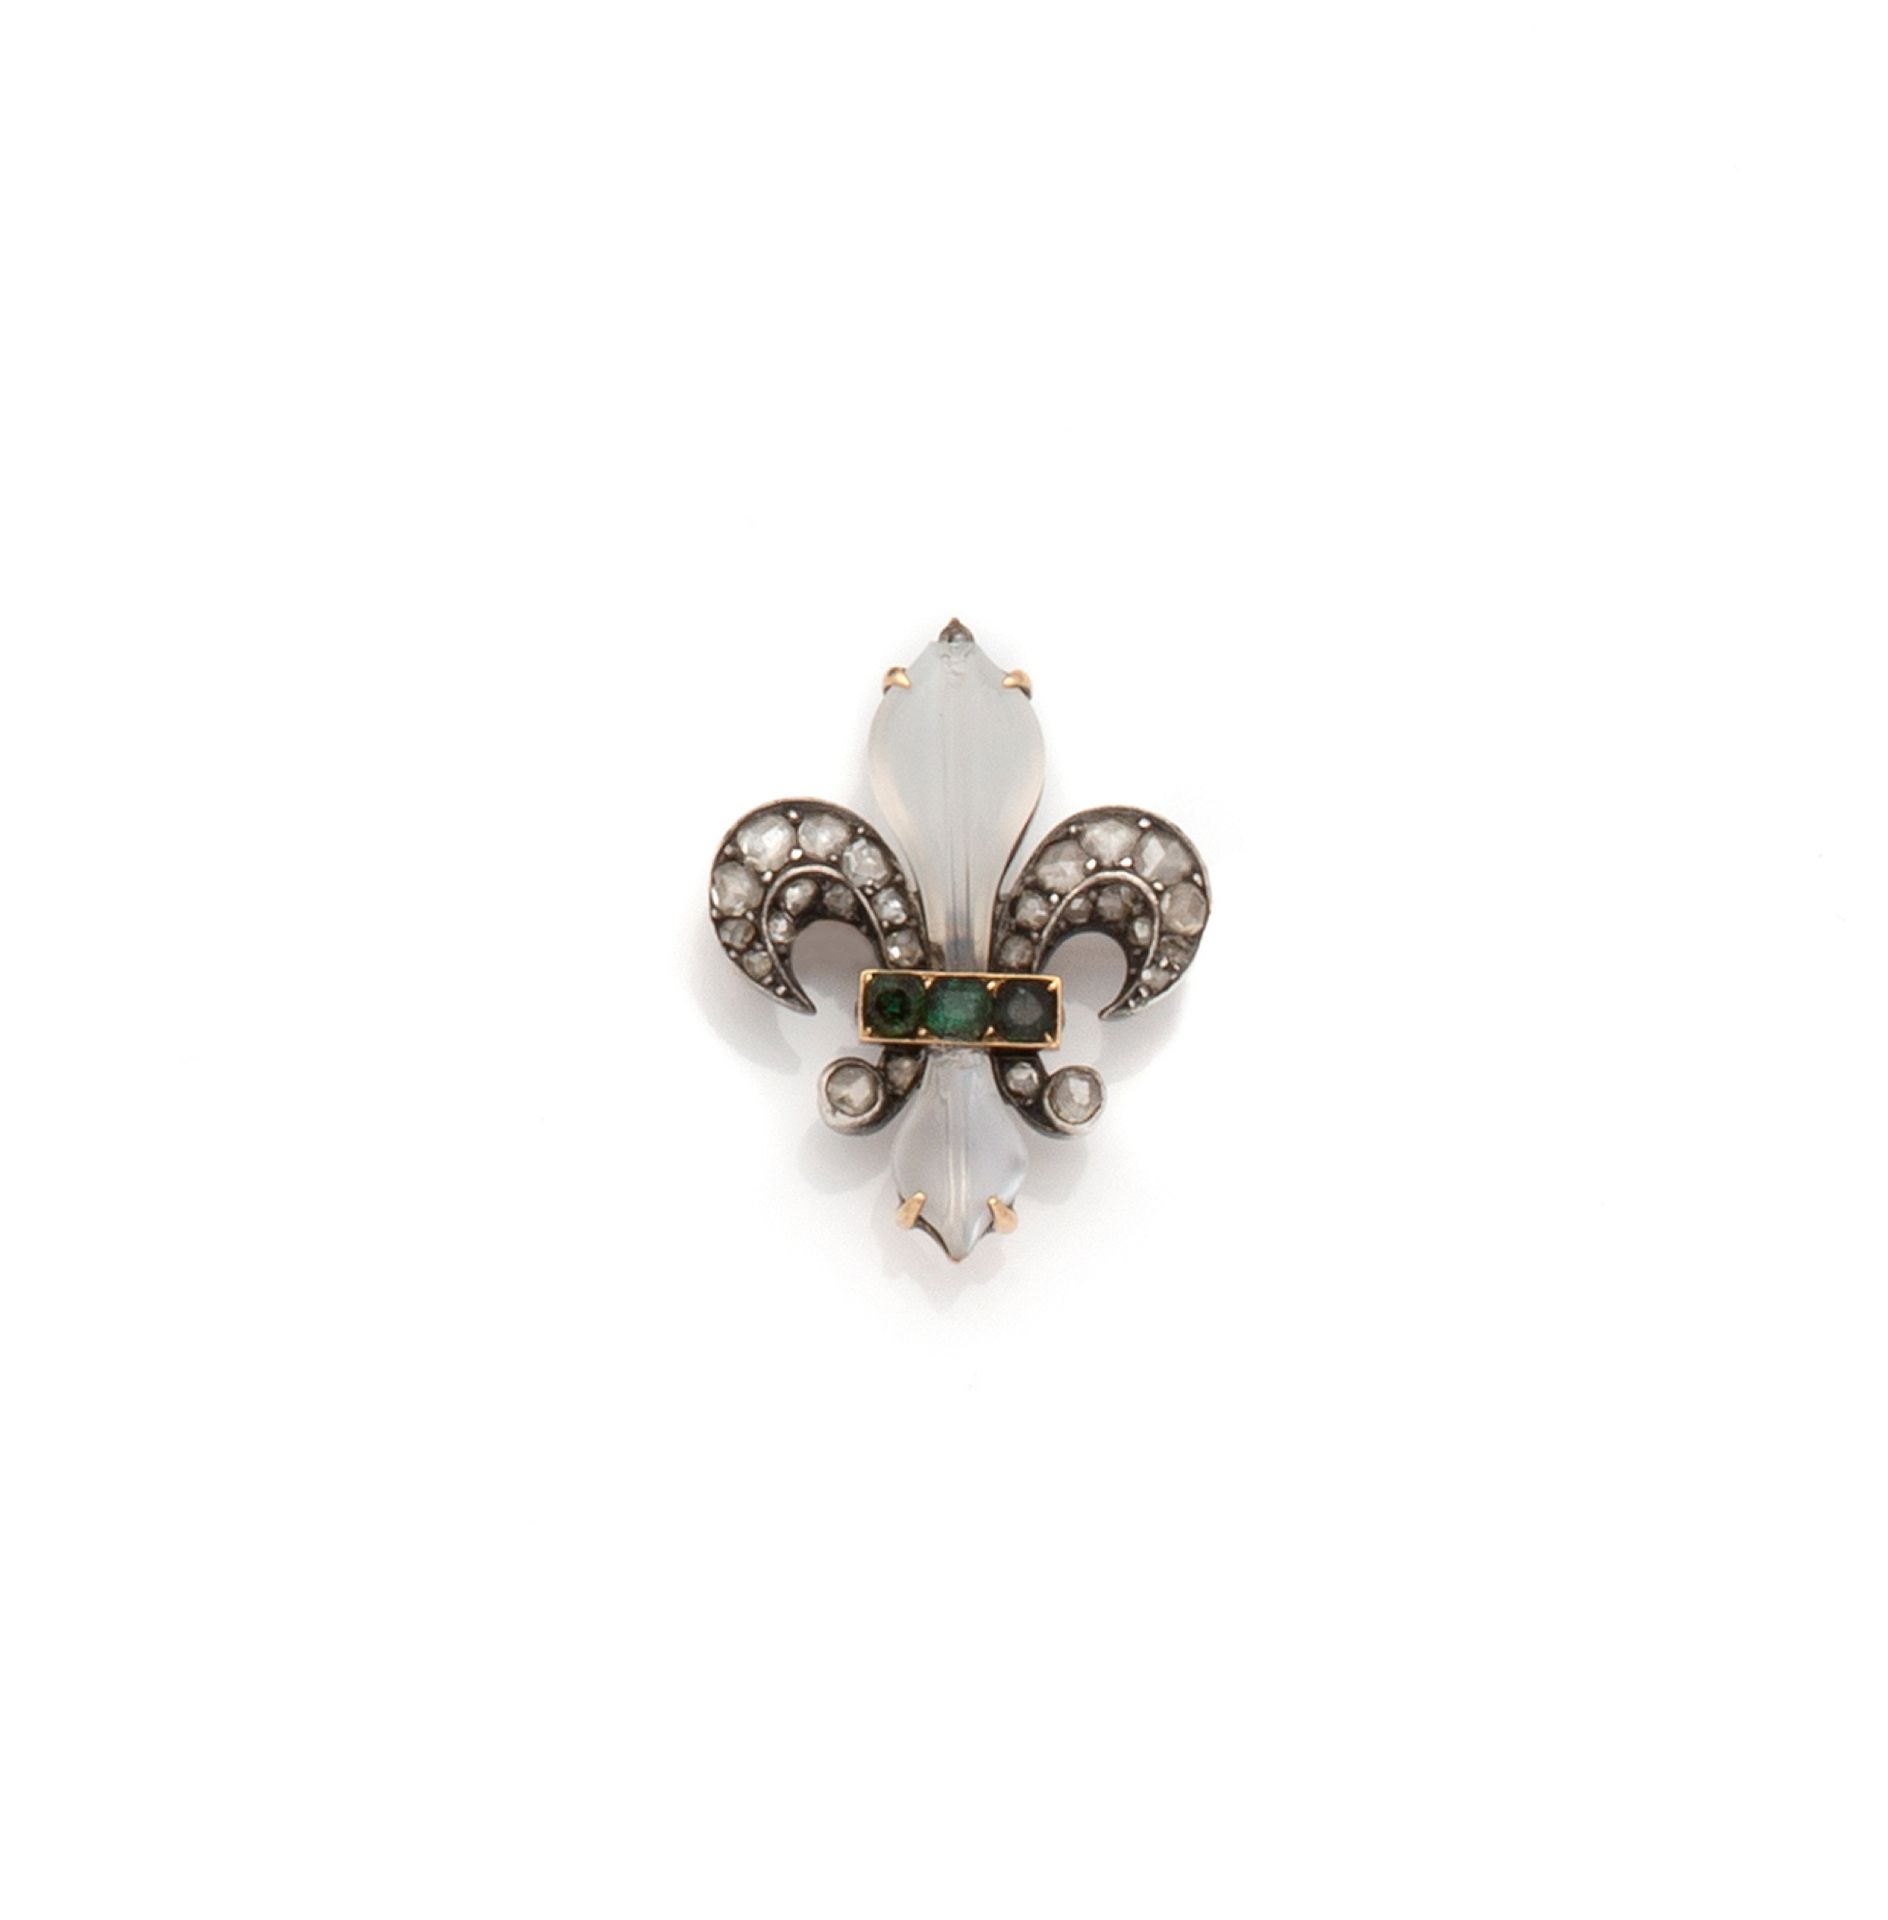 Null 18K(750/1000)玫瑰金和银(800/1000)胸针，代表百合花，镶嵌月光石、玫瑰切割钻石和祖母绿。

法国的工作。

尺寸：29 x 23 &hellip;